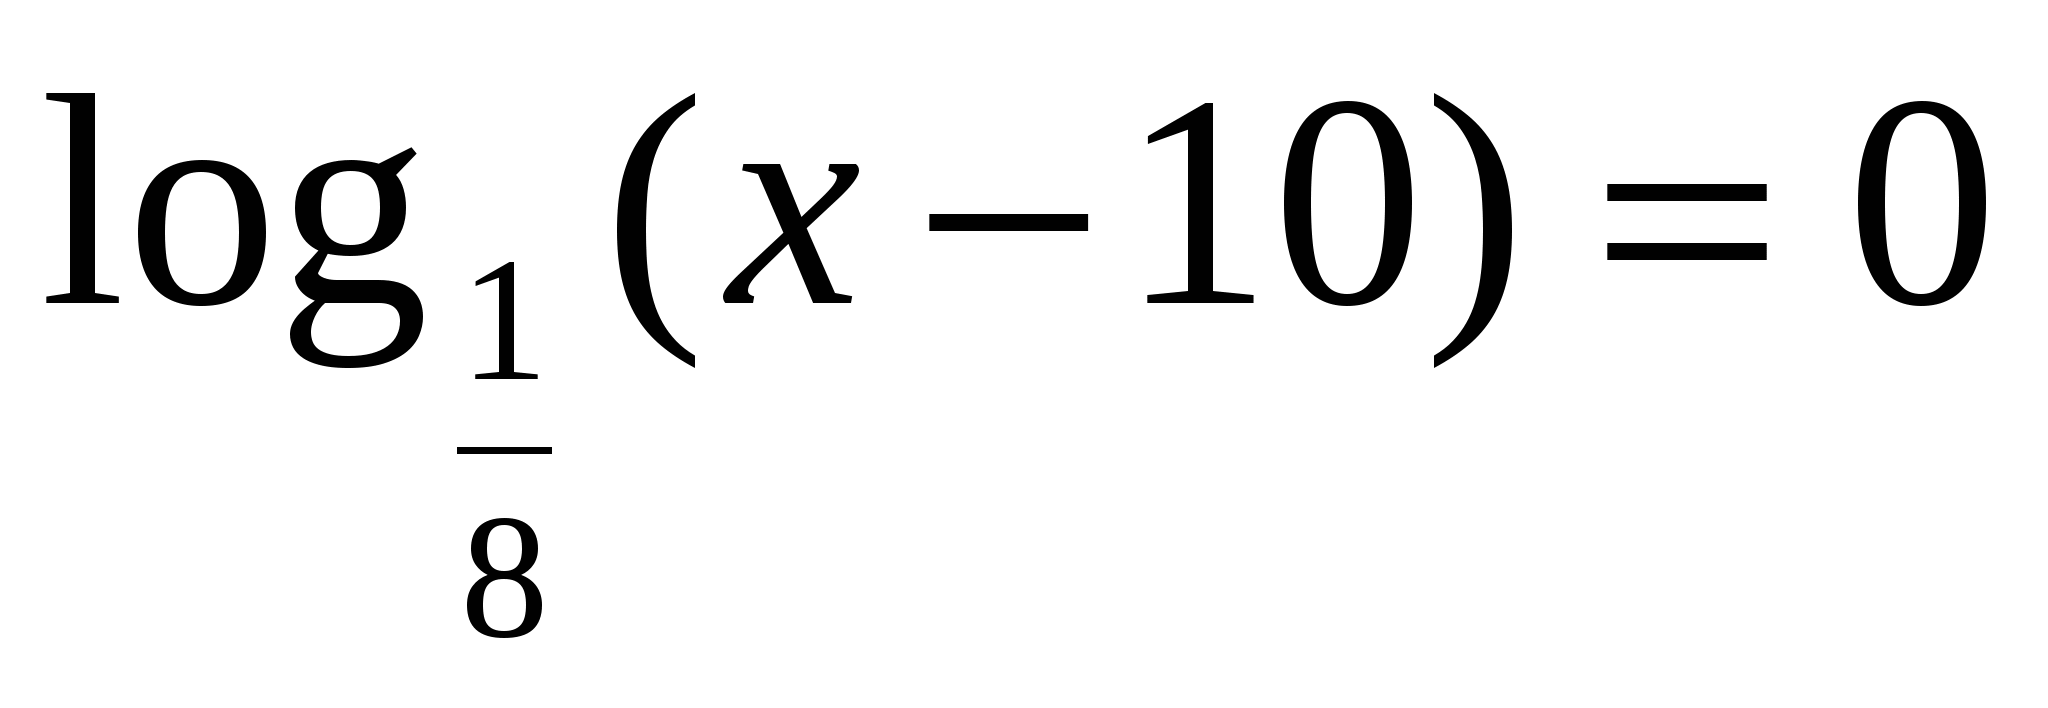 Конспект к уроку математики на тему: «Логарифмические уравнения».